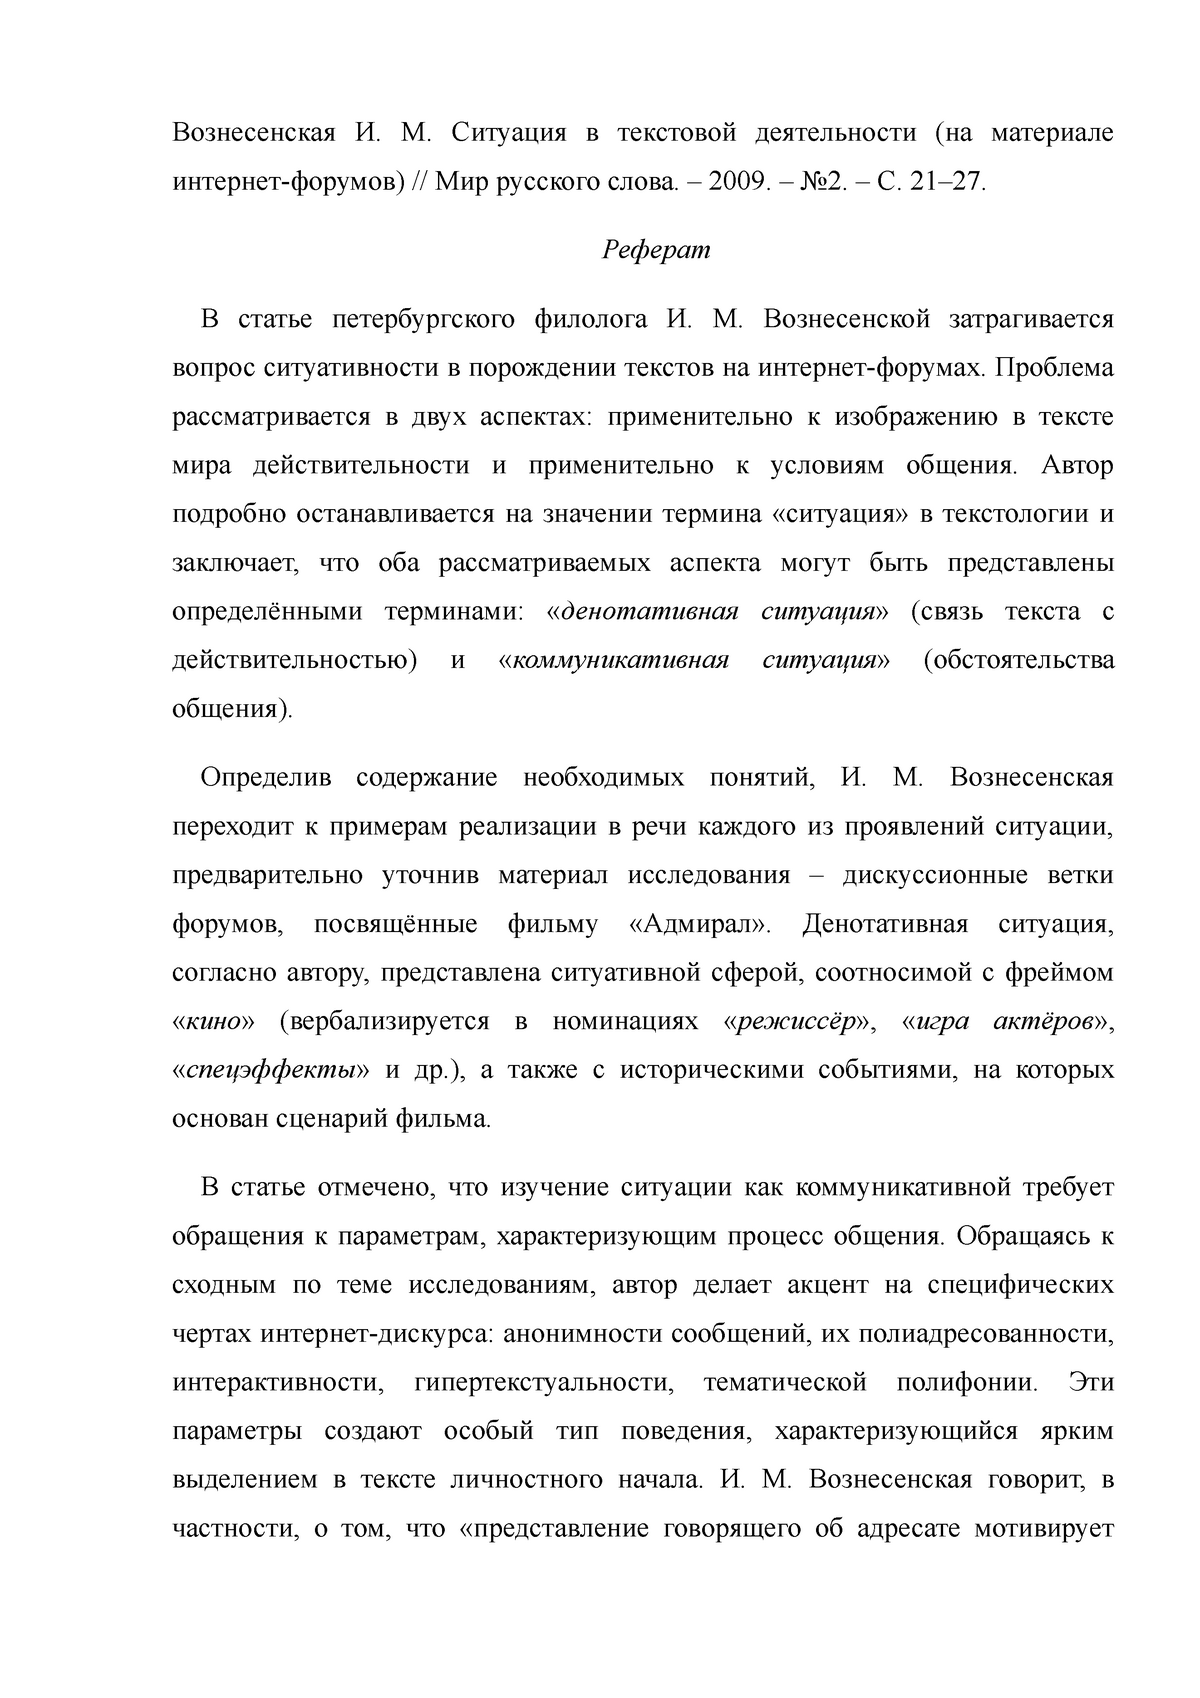 Основные Проблемы Русской Философии Реферат 2010